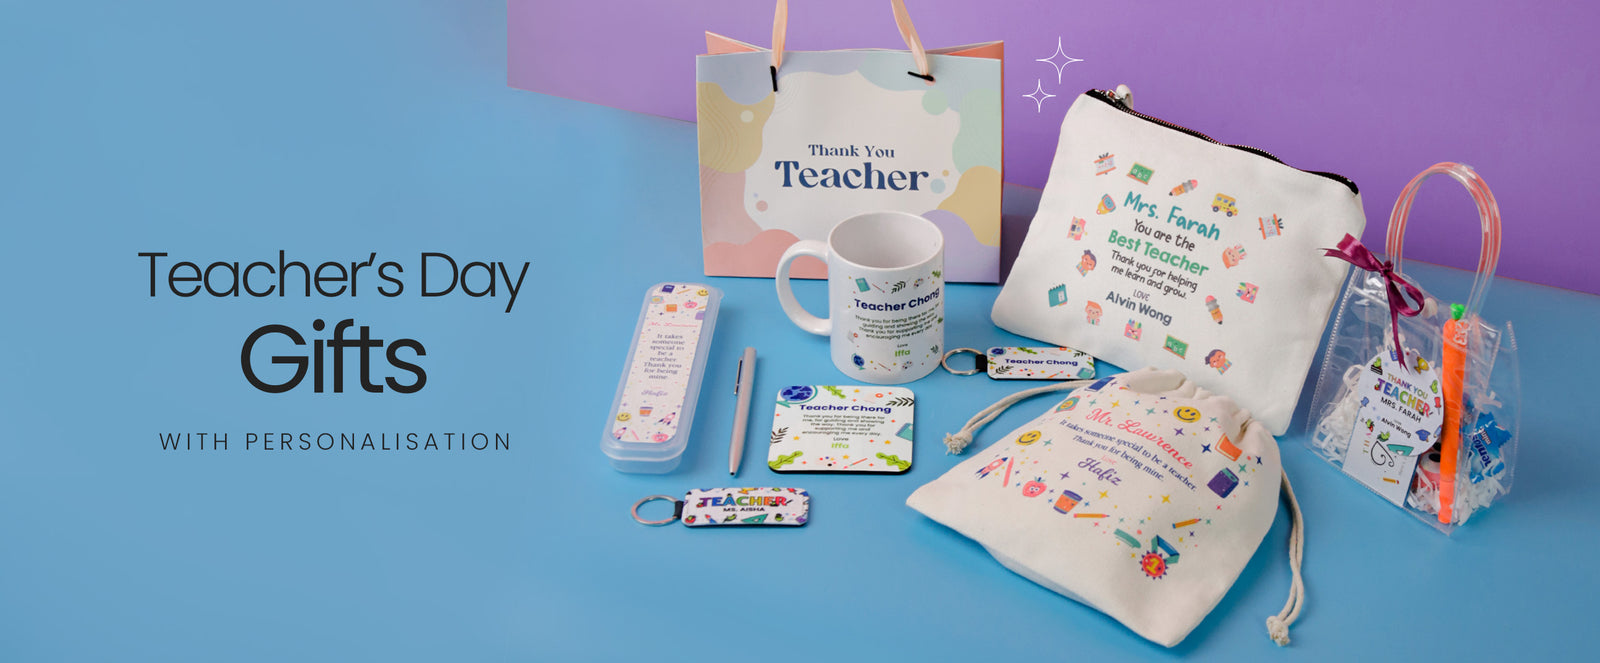 Teachers day gift ideas|best gift for teacher|40 awesome Teachers day gift  ideas under Rs.100 - YouTube